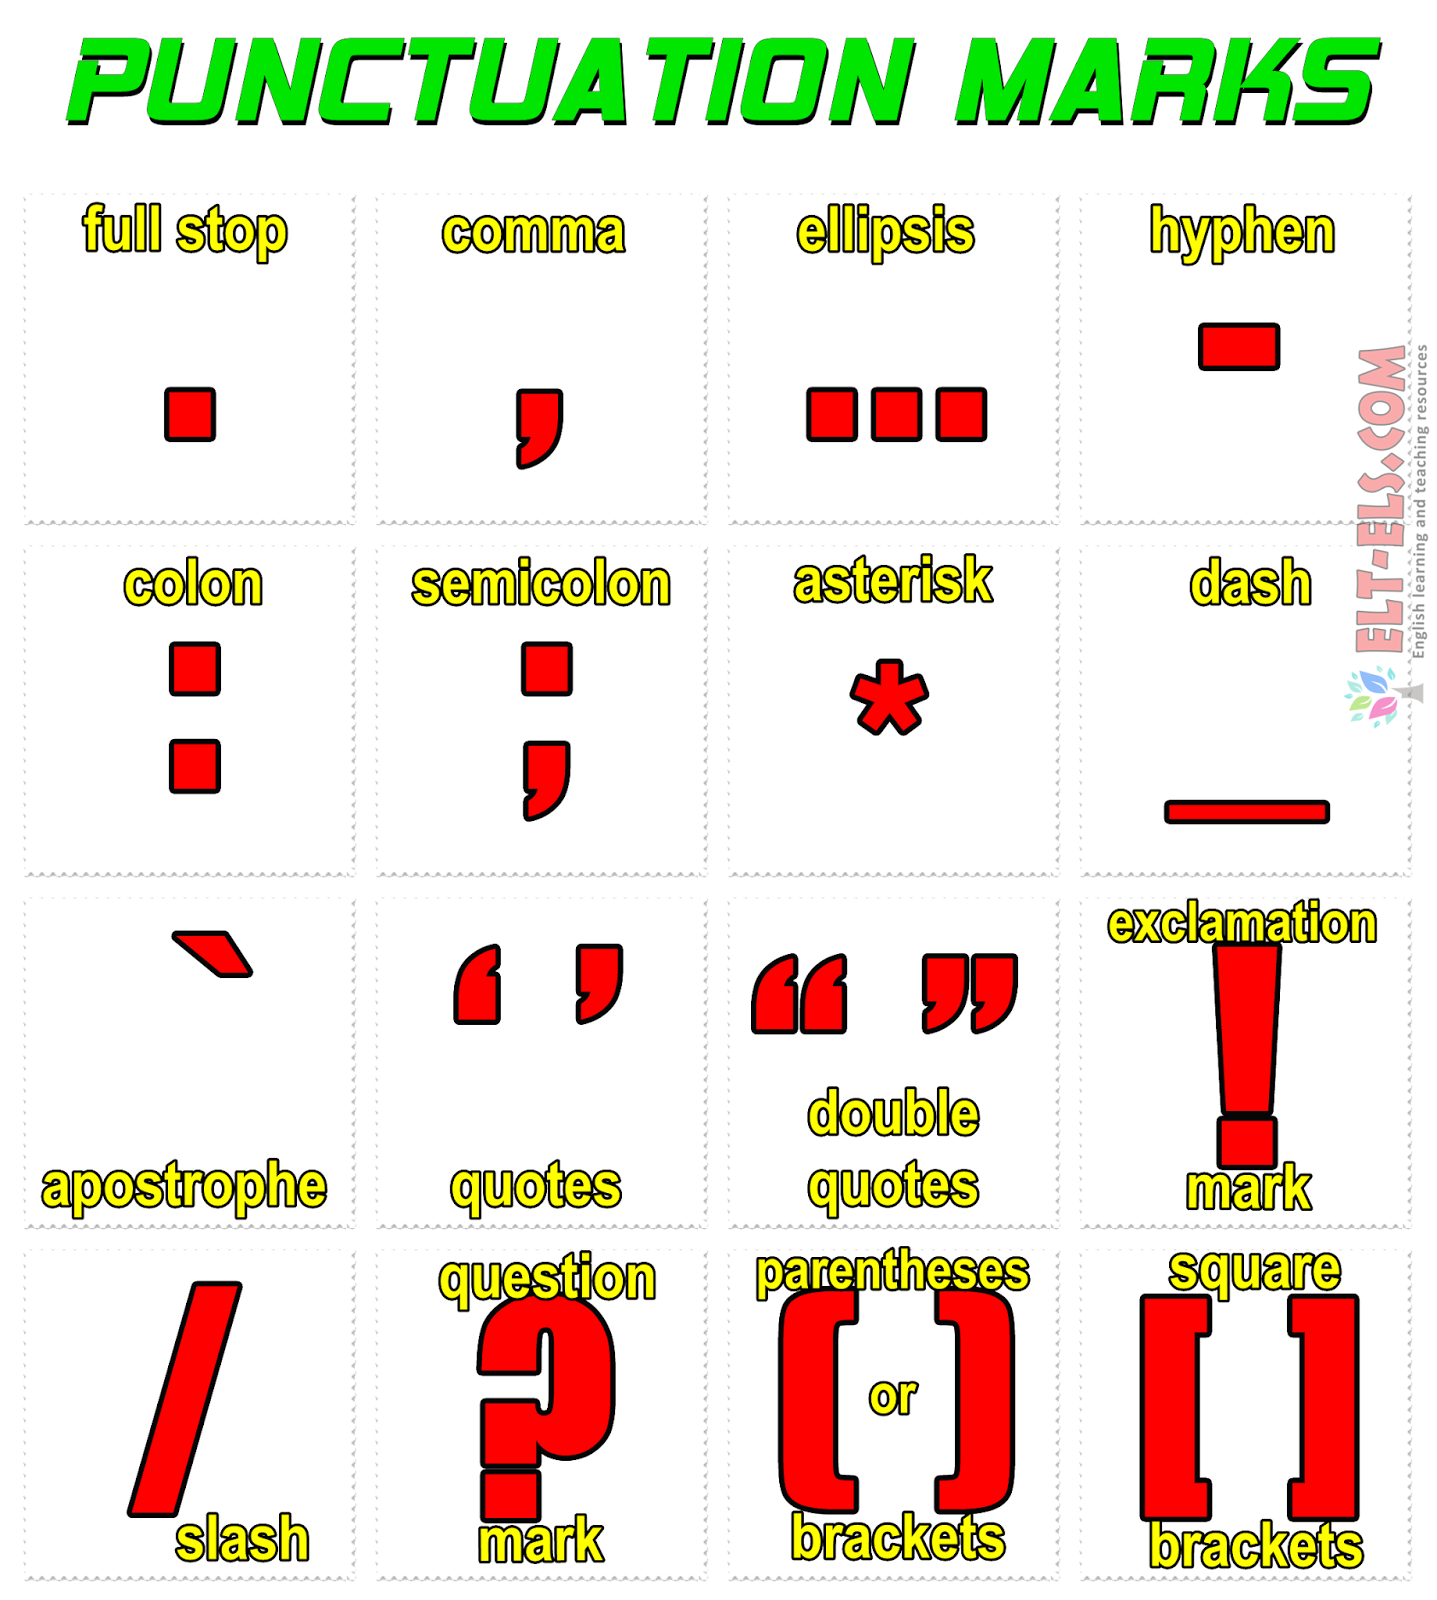 Punctuation marks | www.elt-els.com